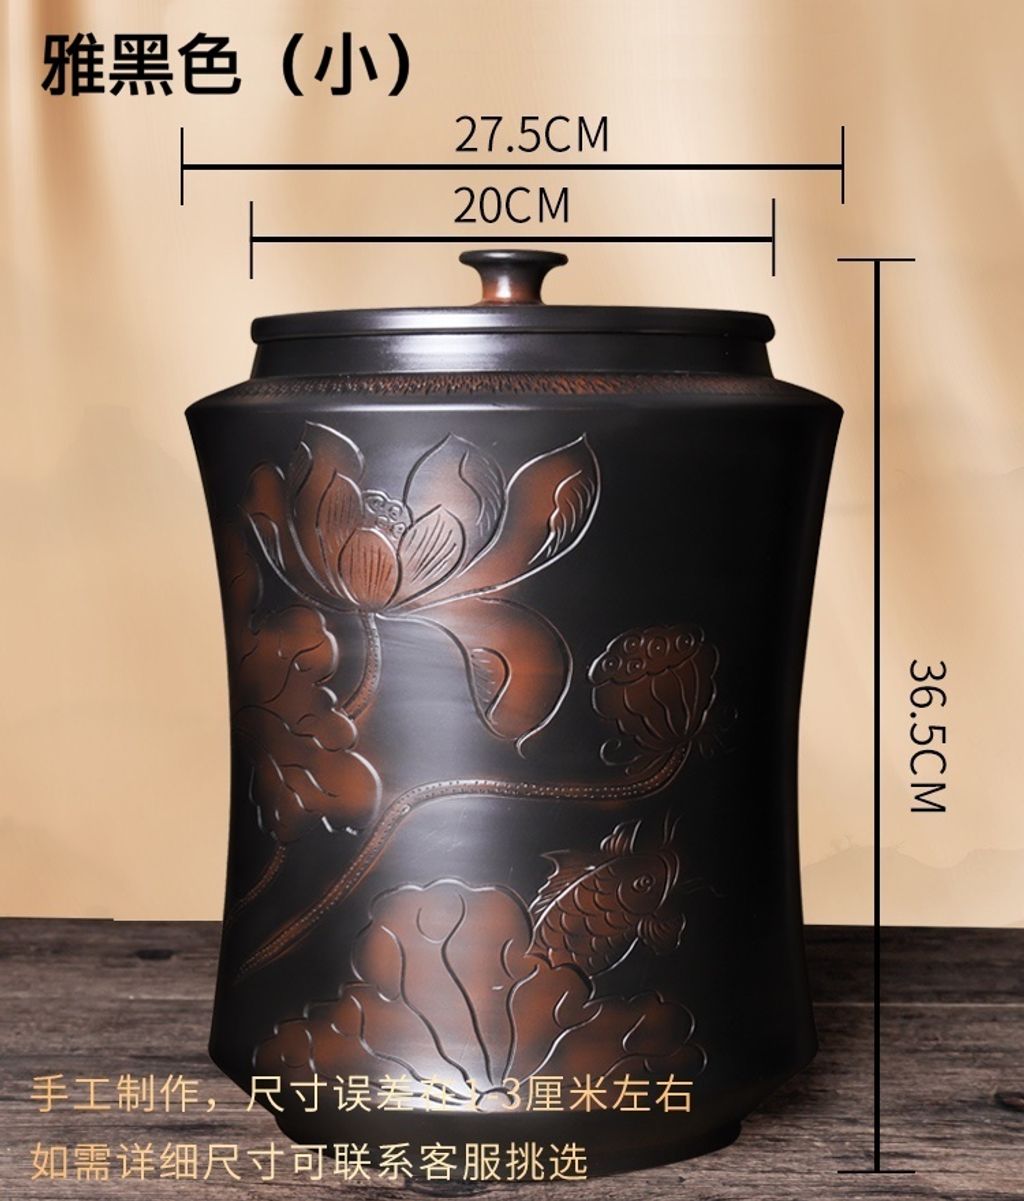 紫陶茶缸4-1雅黑色.jpg